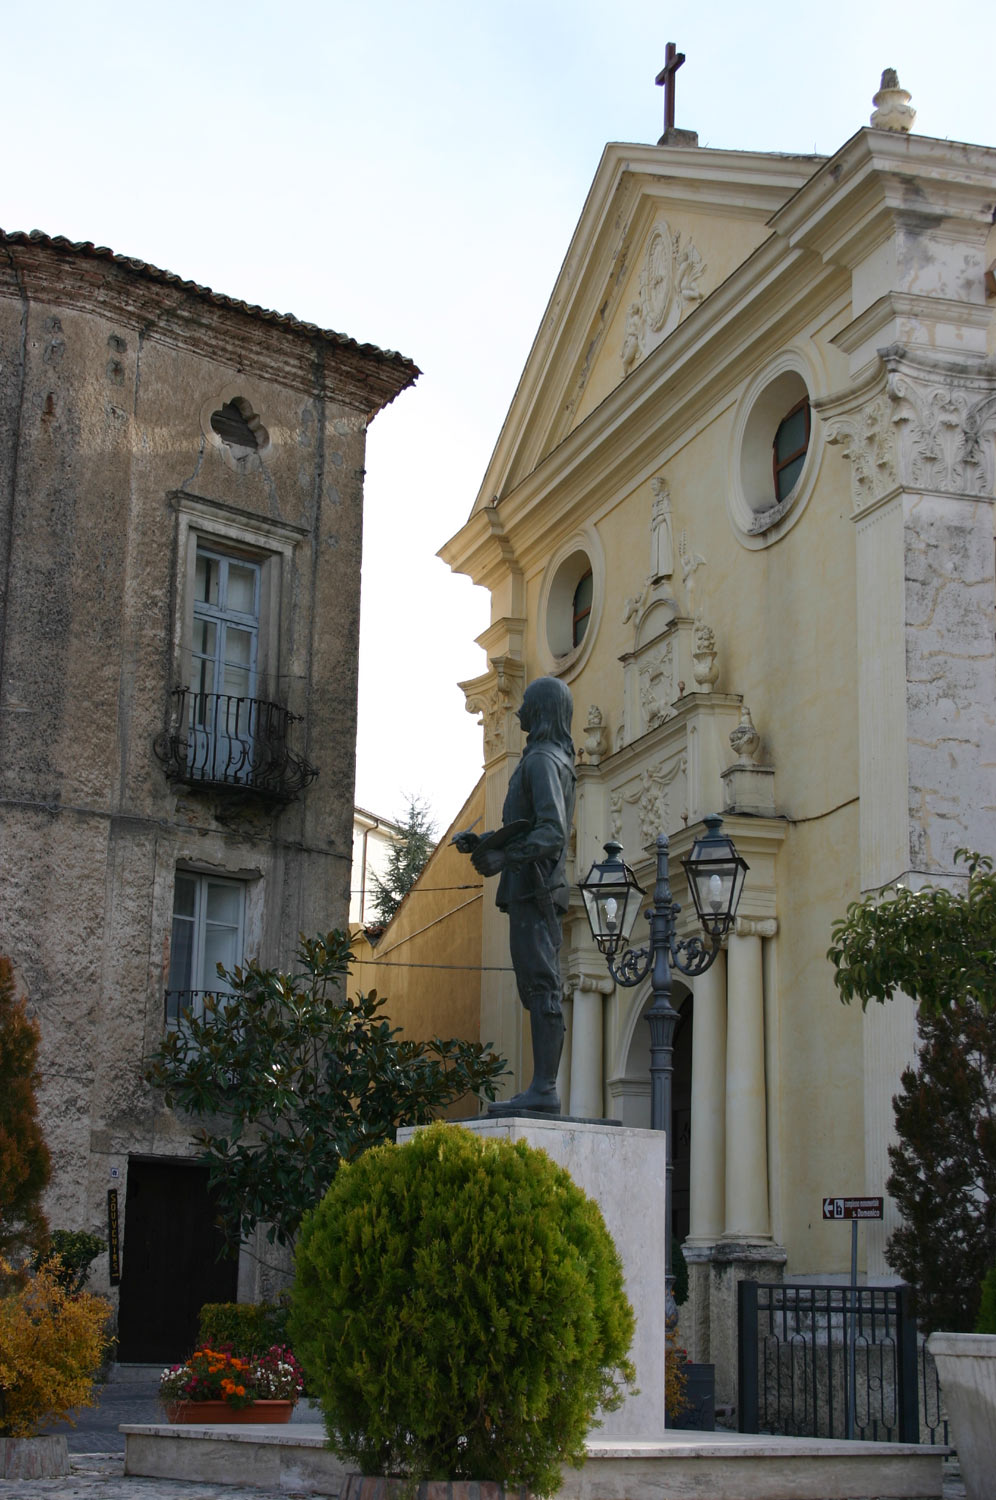 La chiesa di San Domenico con la statua di Mattia Preti. Ph. Credit Franco Parrottino
